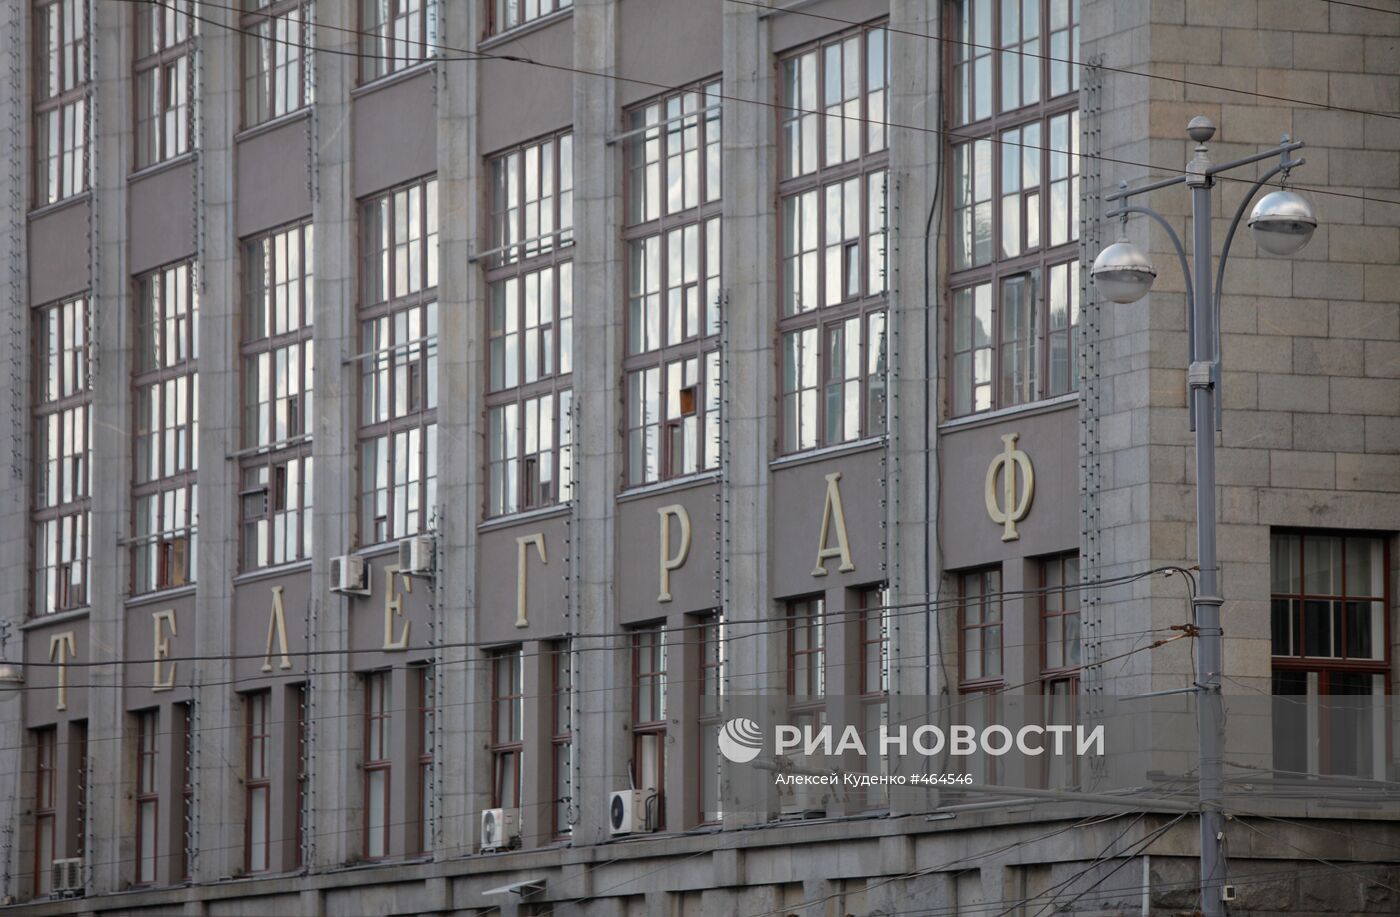 Фрагмент фасада здания Центрального телеграфа в Москве